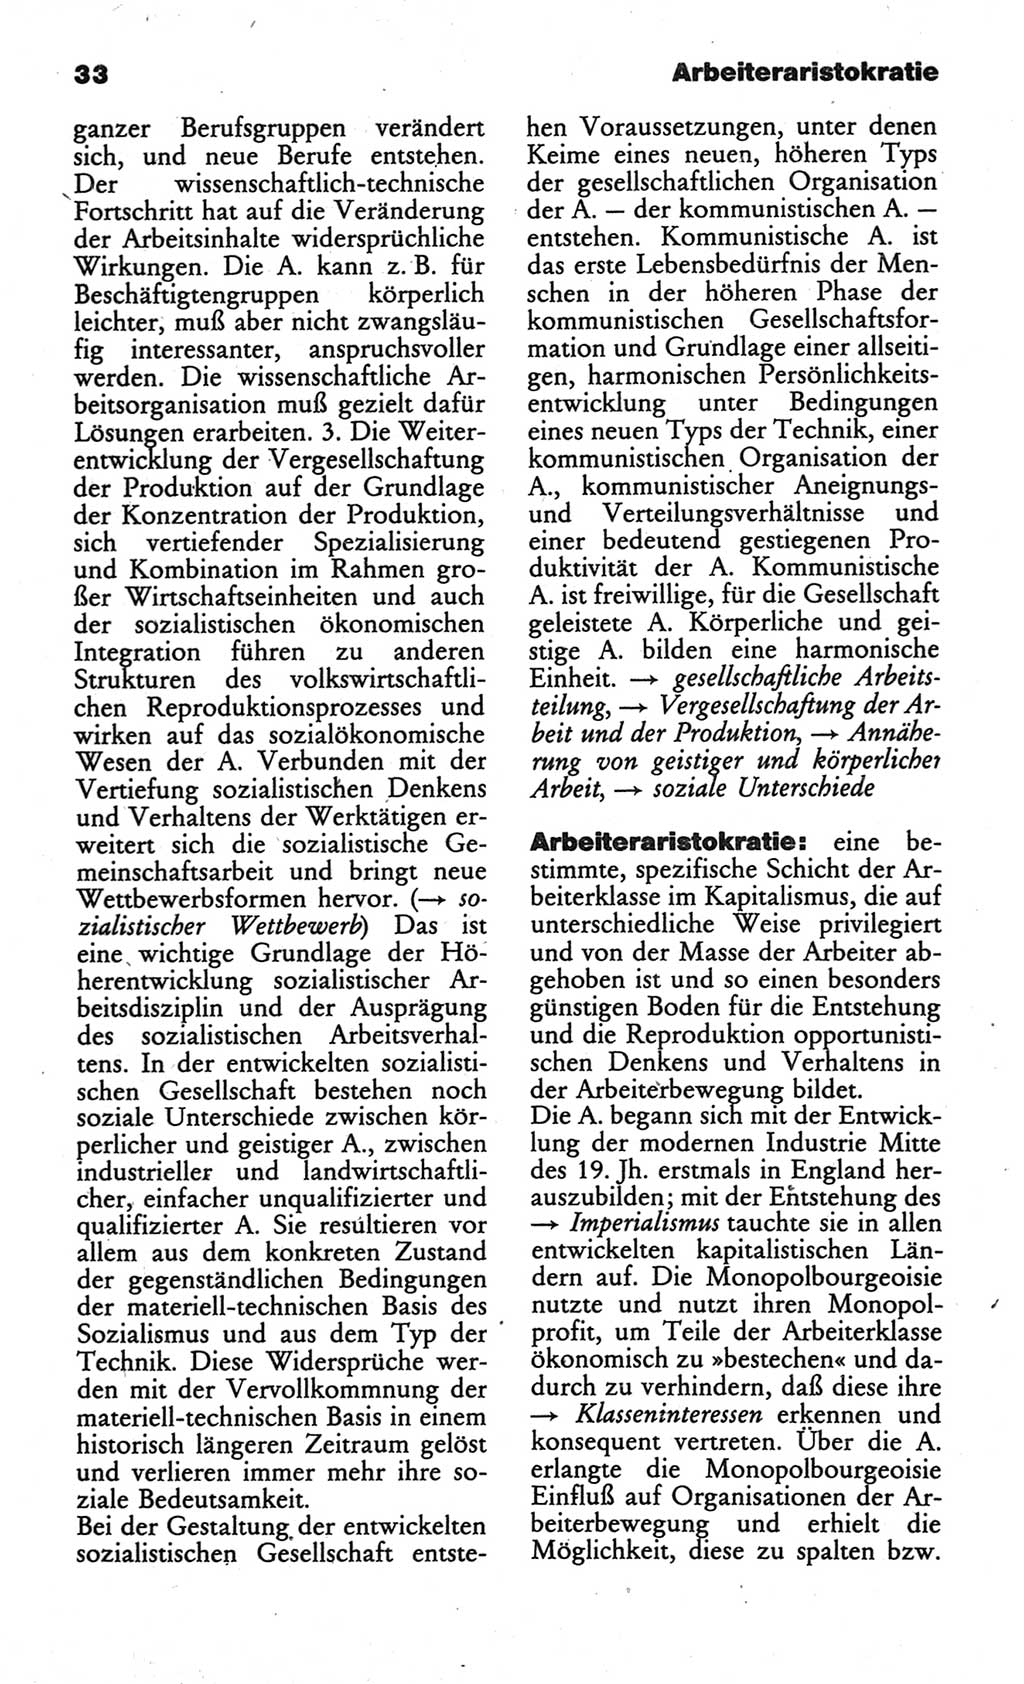 Wörterbuch des wissenschaftlichen Kommunismus [Deutsche Demokratische Republik (DDR)] 1984, Seite 33 (Wb. wiss. Komm. DDR 1984, S. 33)